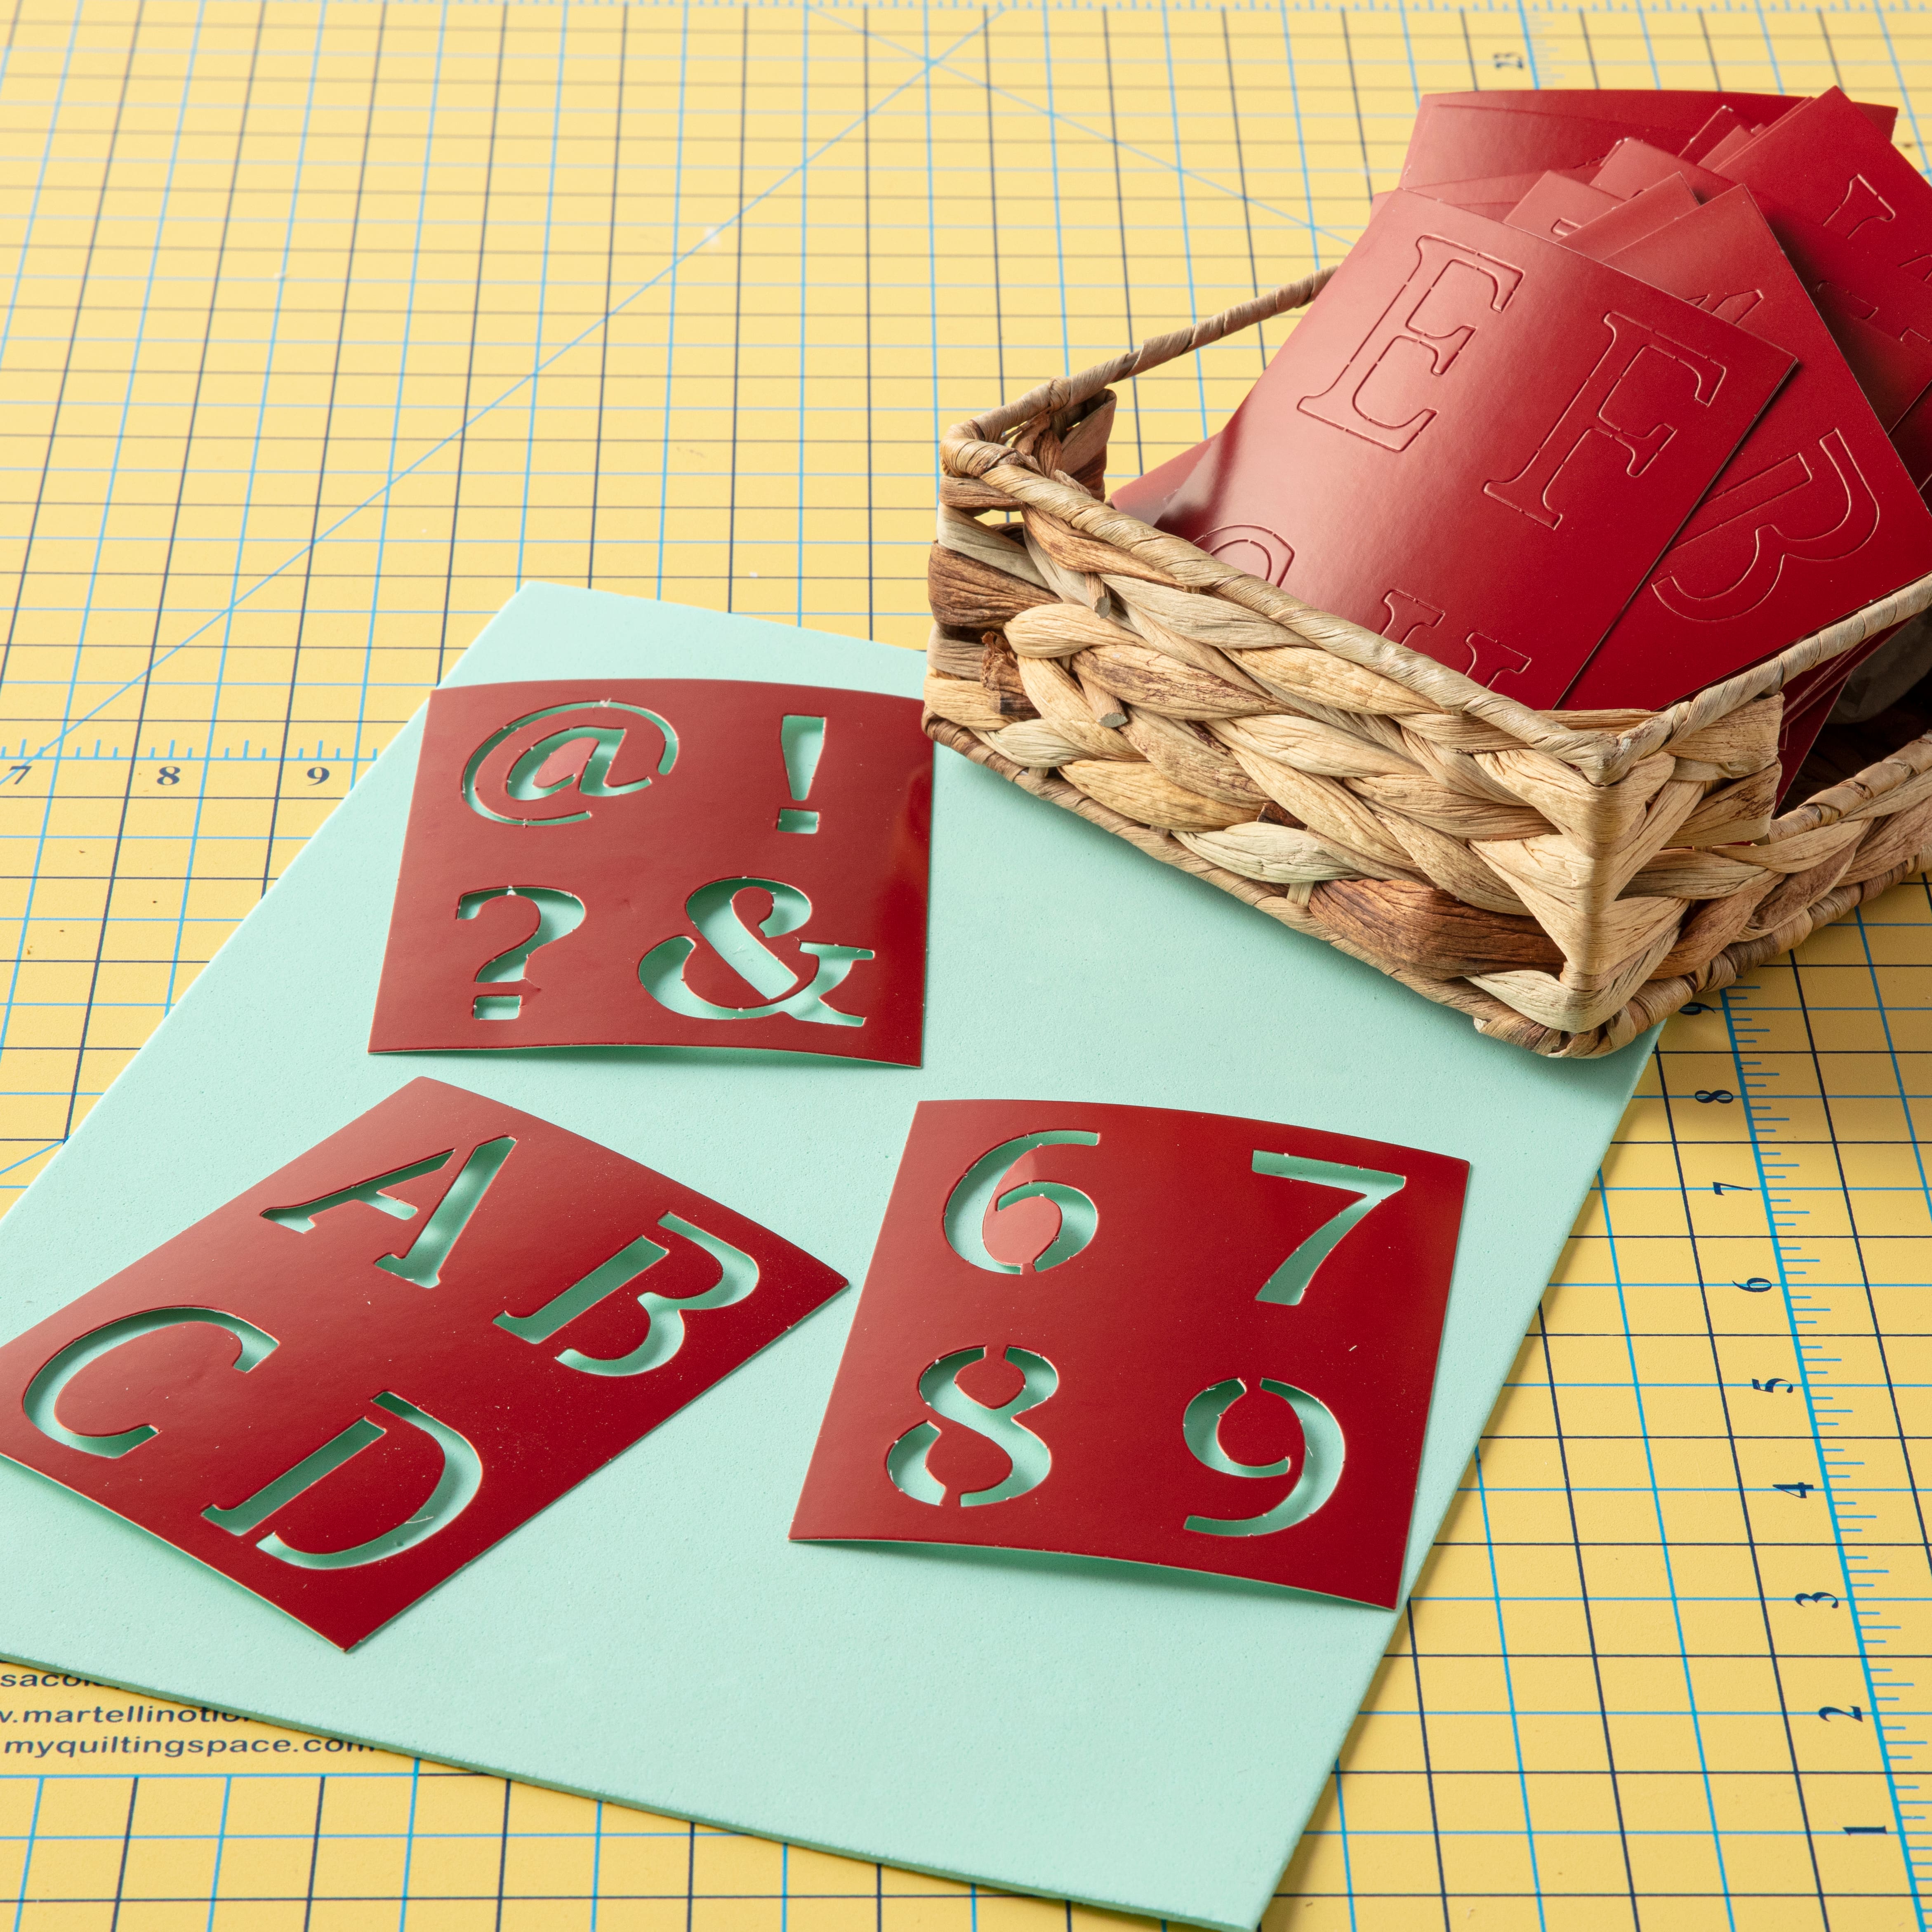 6 Pack: Old School Alphabet Stencils Set by Craft Smart&#xAE;